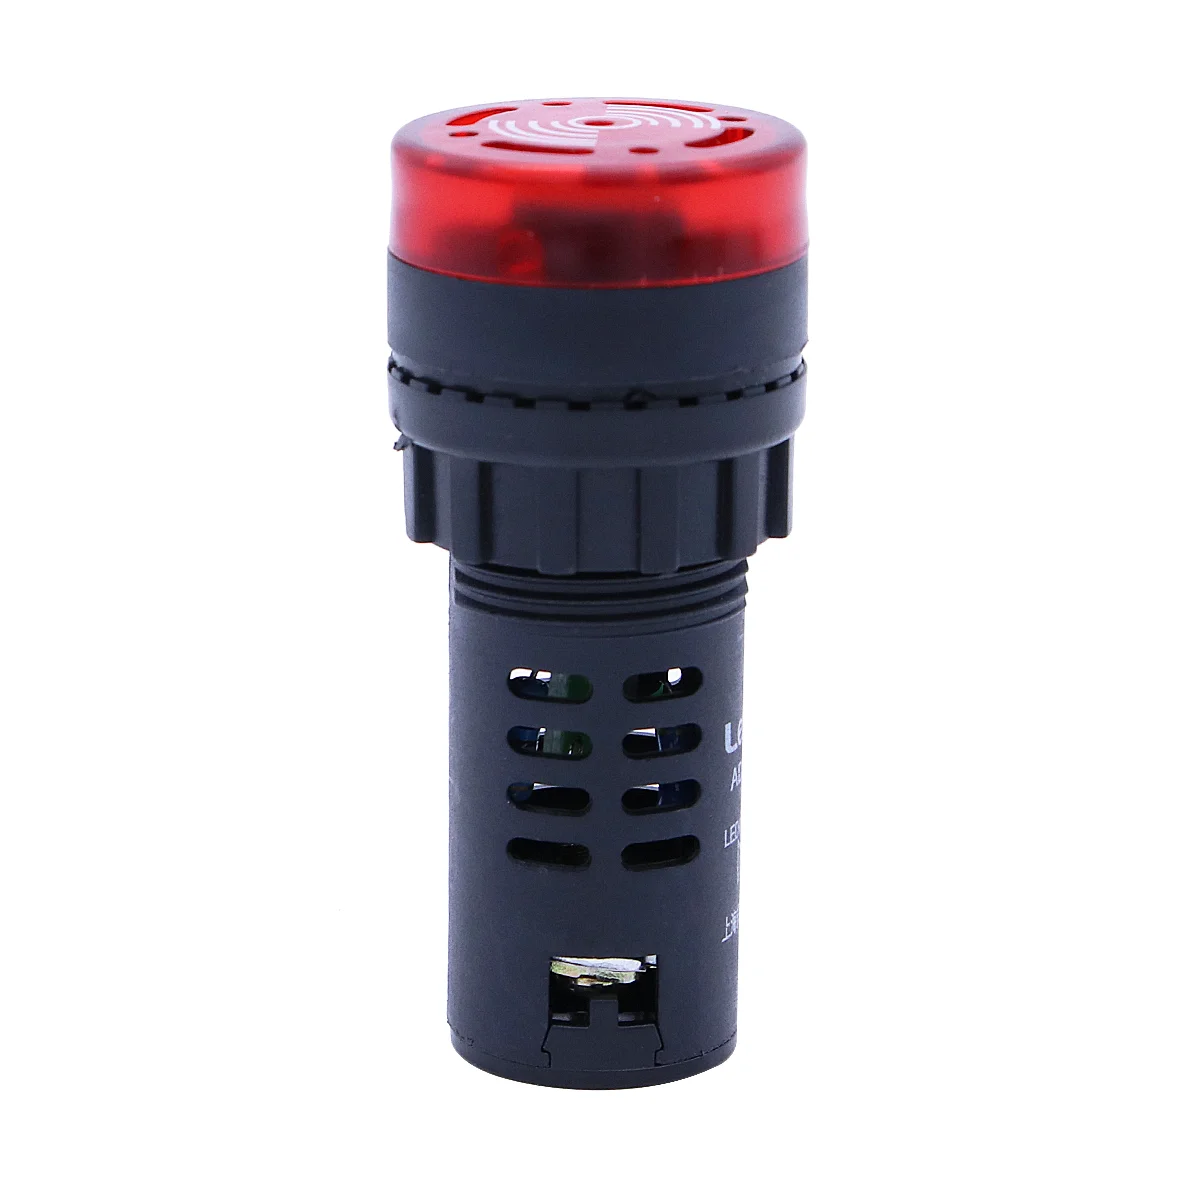 

24 В, маленькая фонарь, индикатор фонаря, фонарь с будильником (красная фонарь)